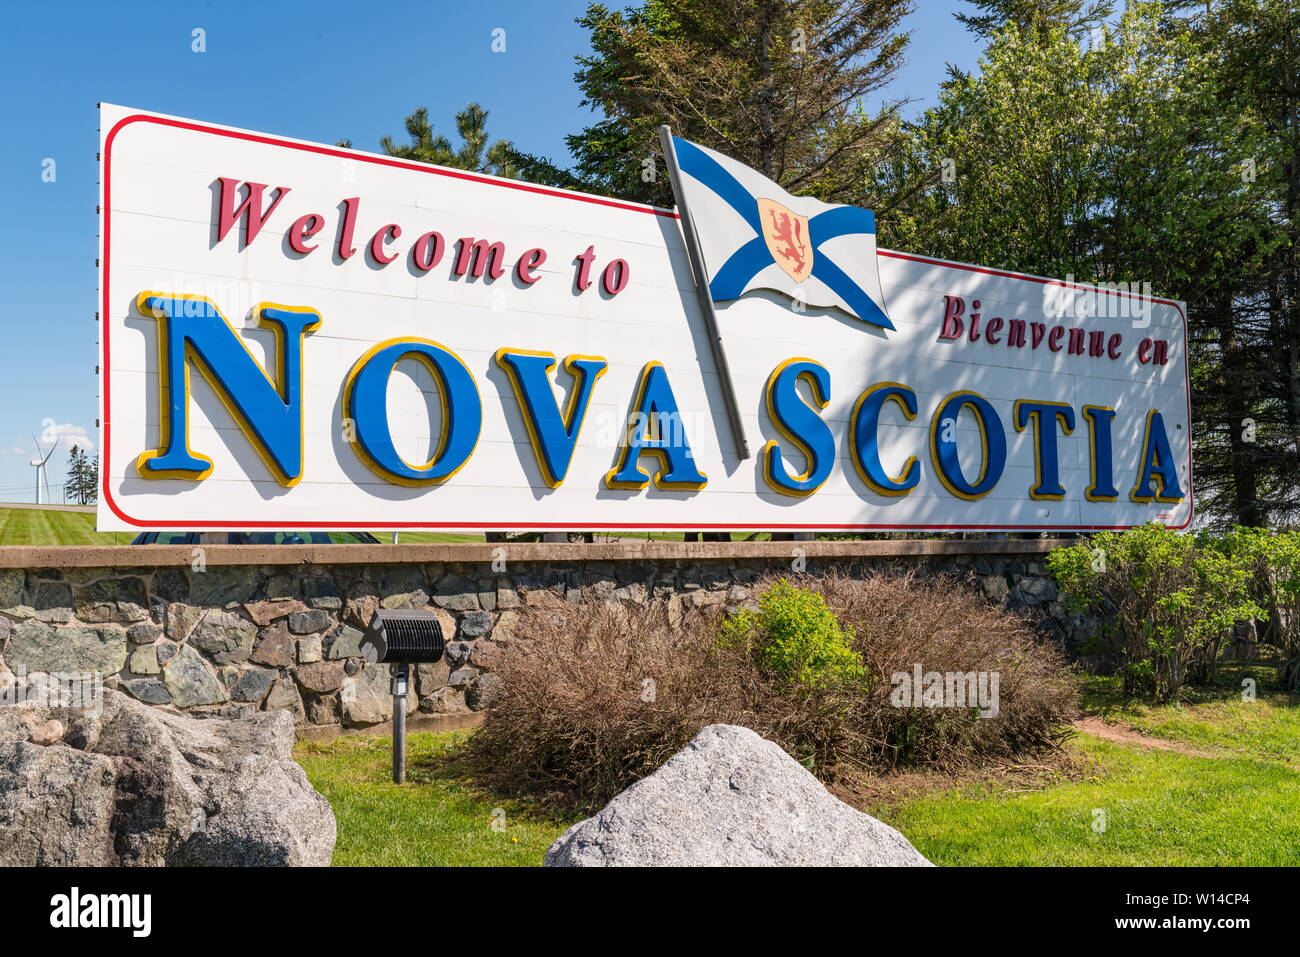 An der Grenze der Provinz in Kanada Willkommen in Nova Scotia Zeichen Stockfoto